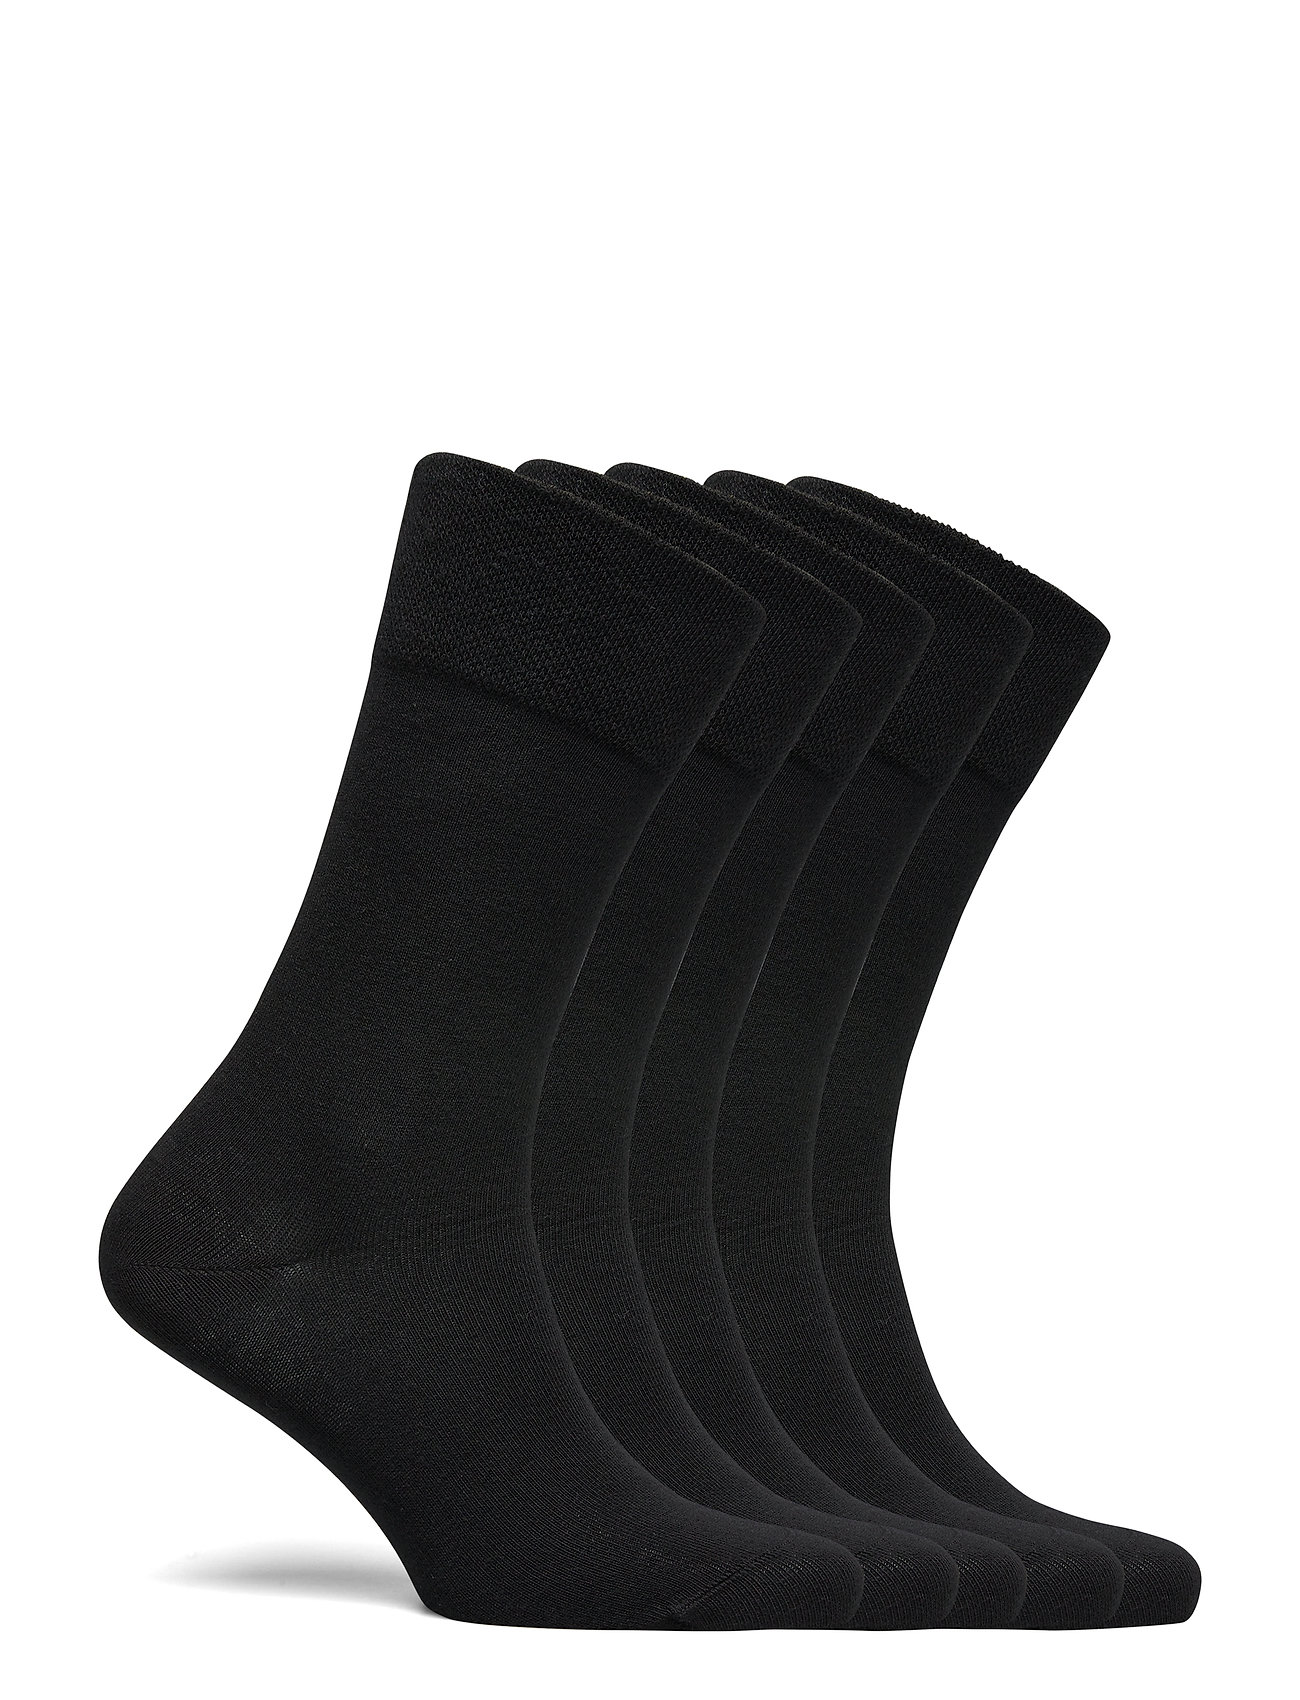 Schiesser - Socks - multipack socks - black - 1